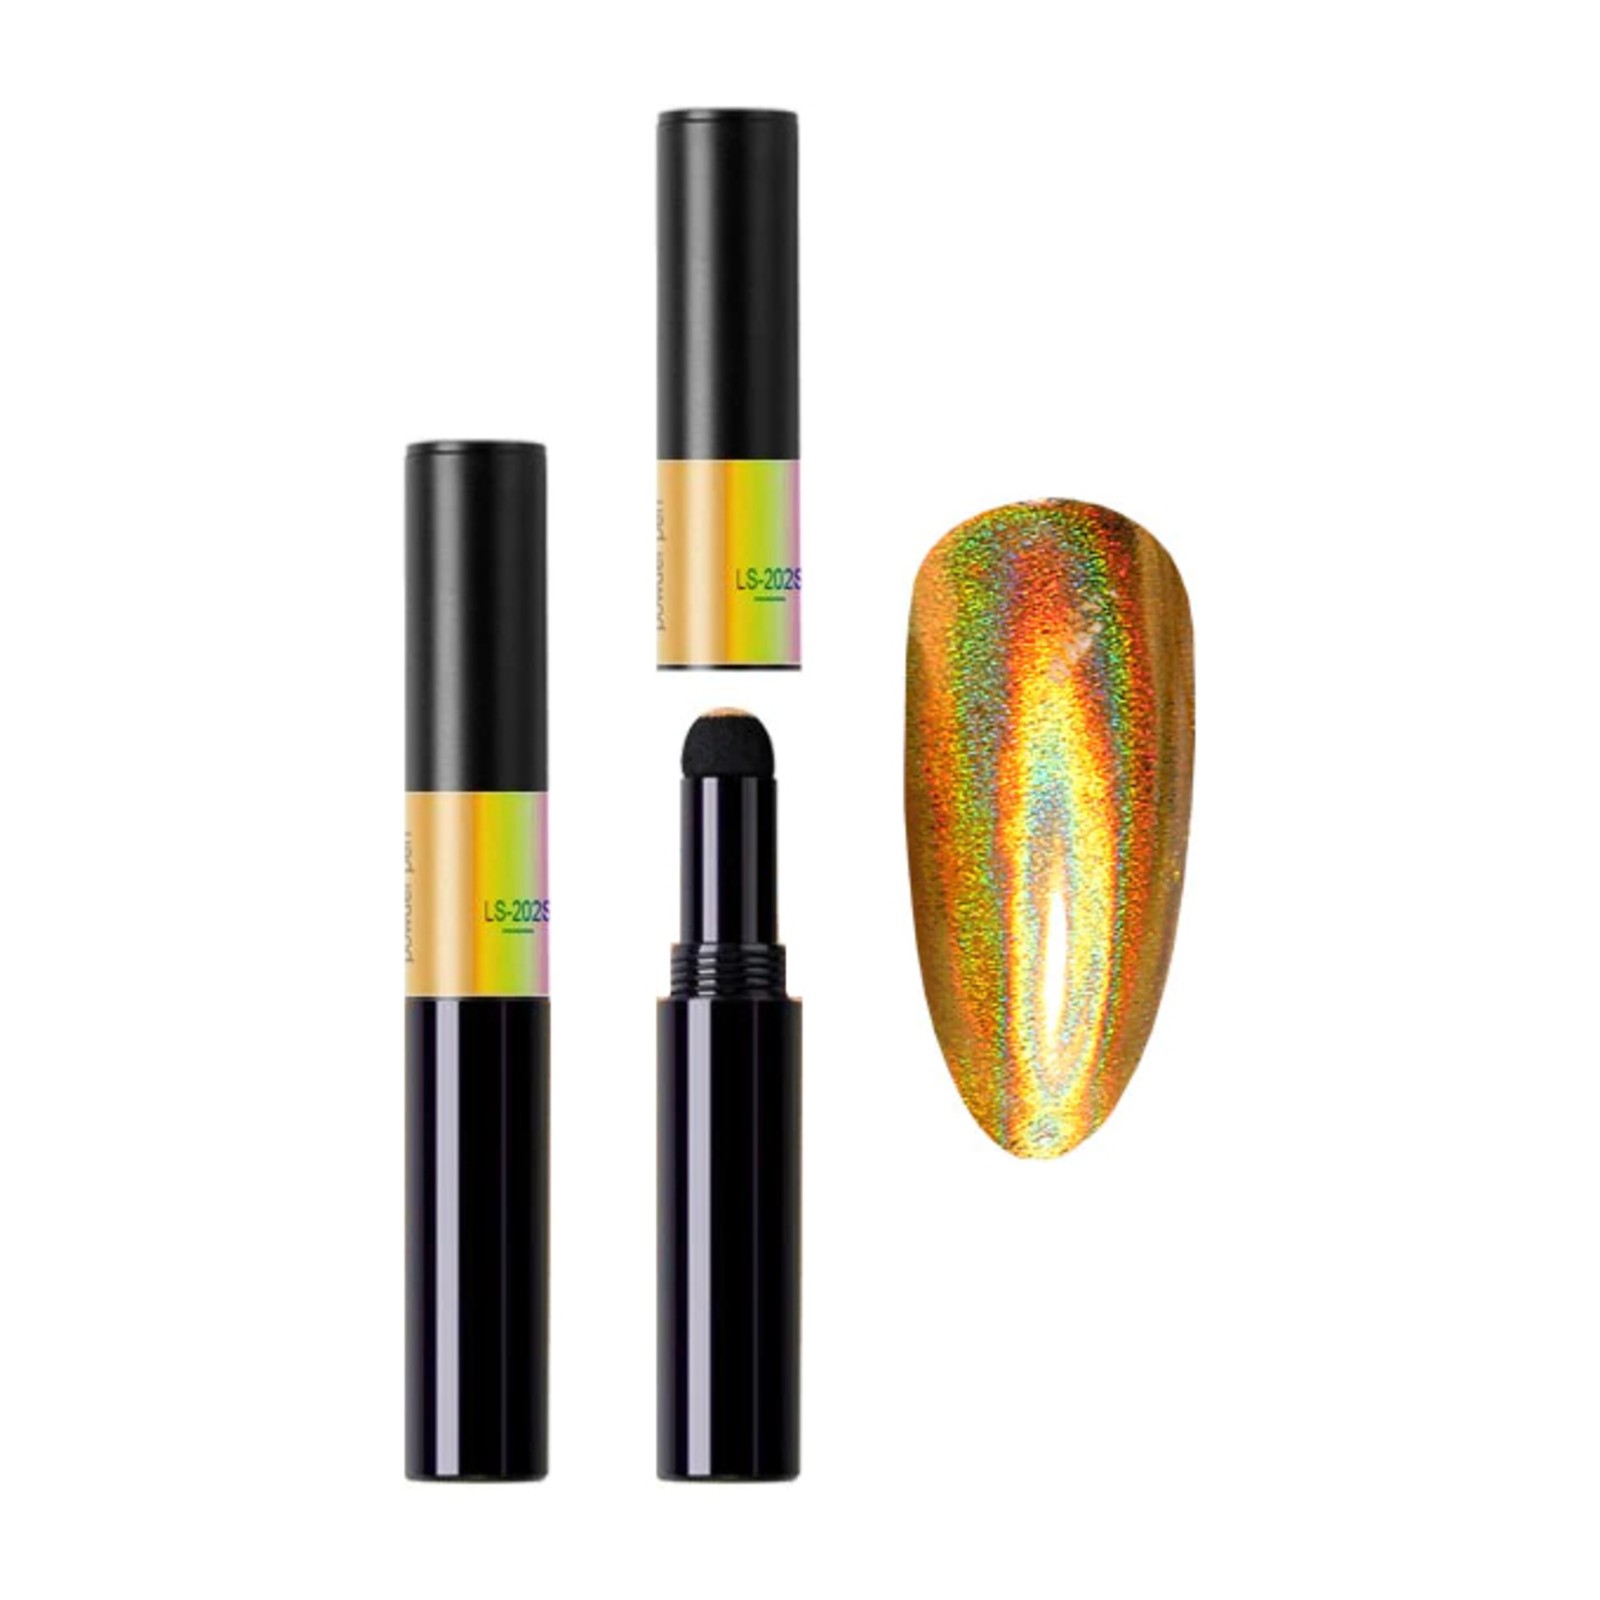 Venalisa - Magic Powder Pen - LS-202S Gold